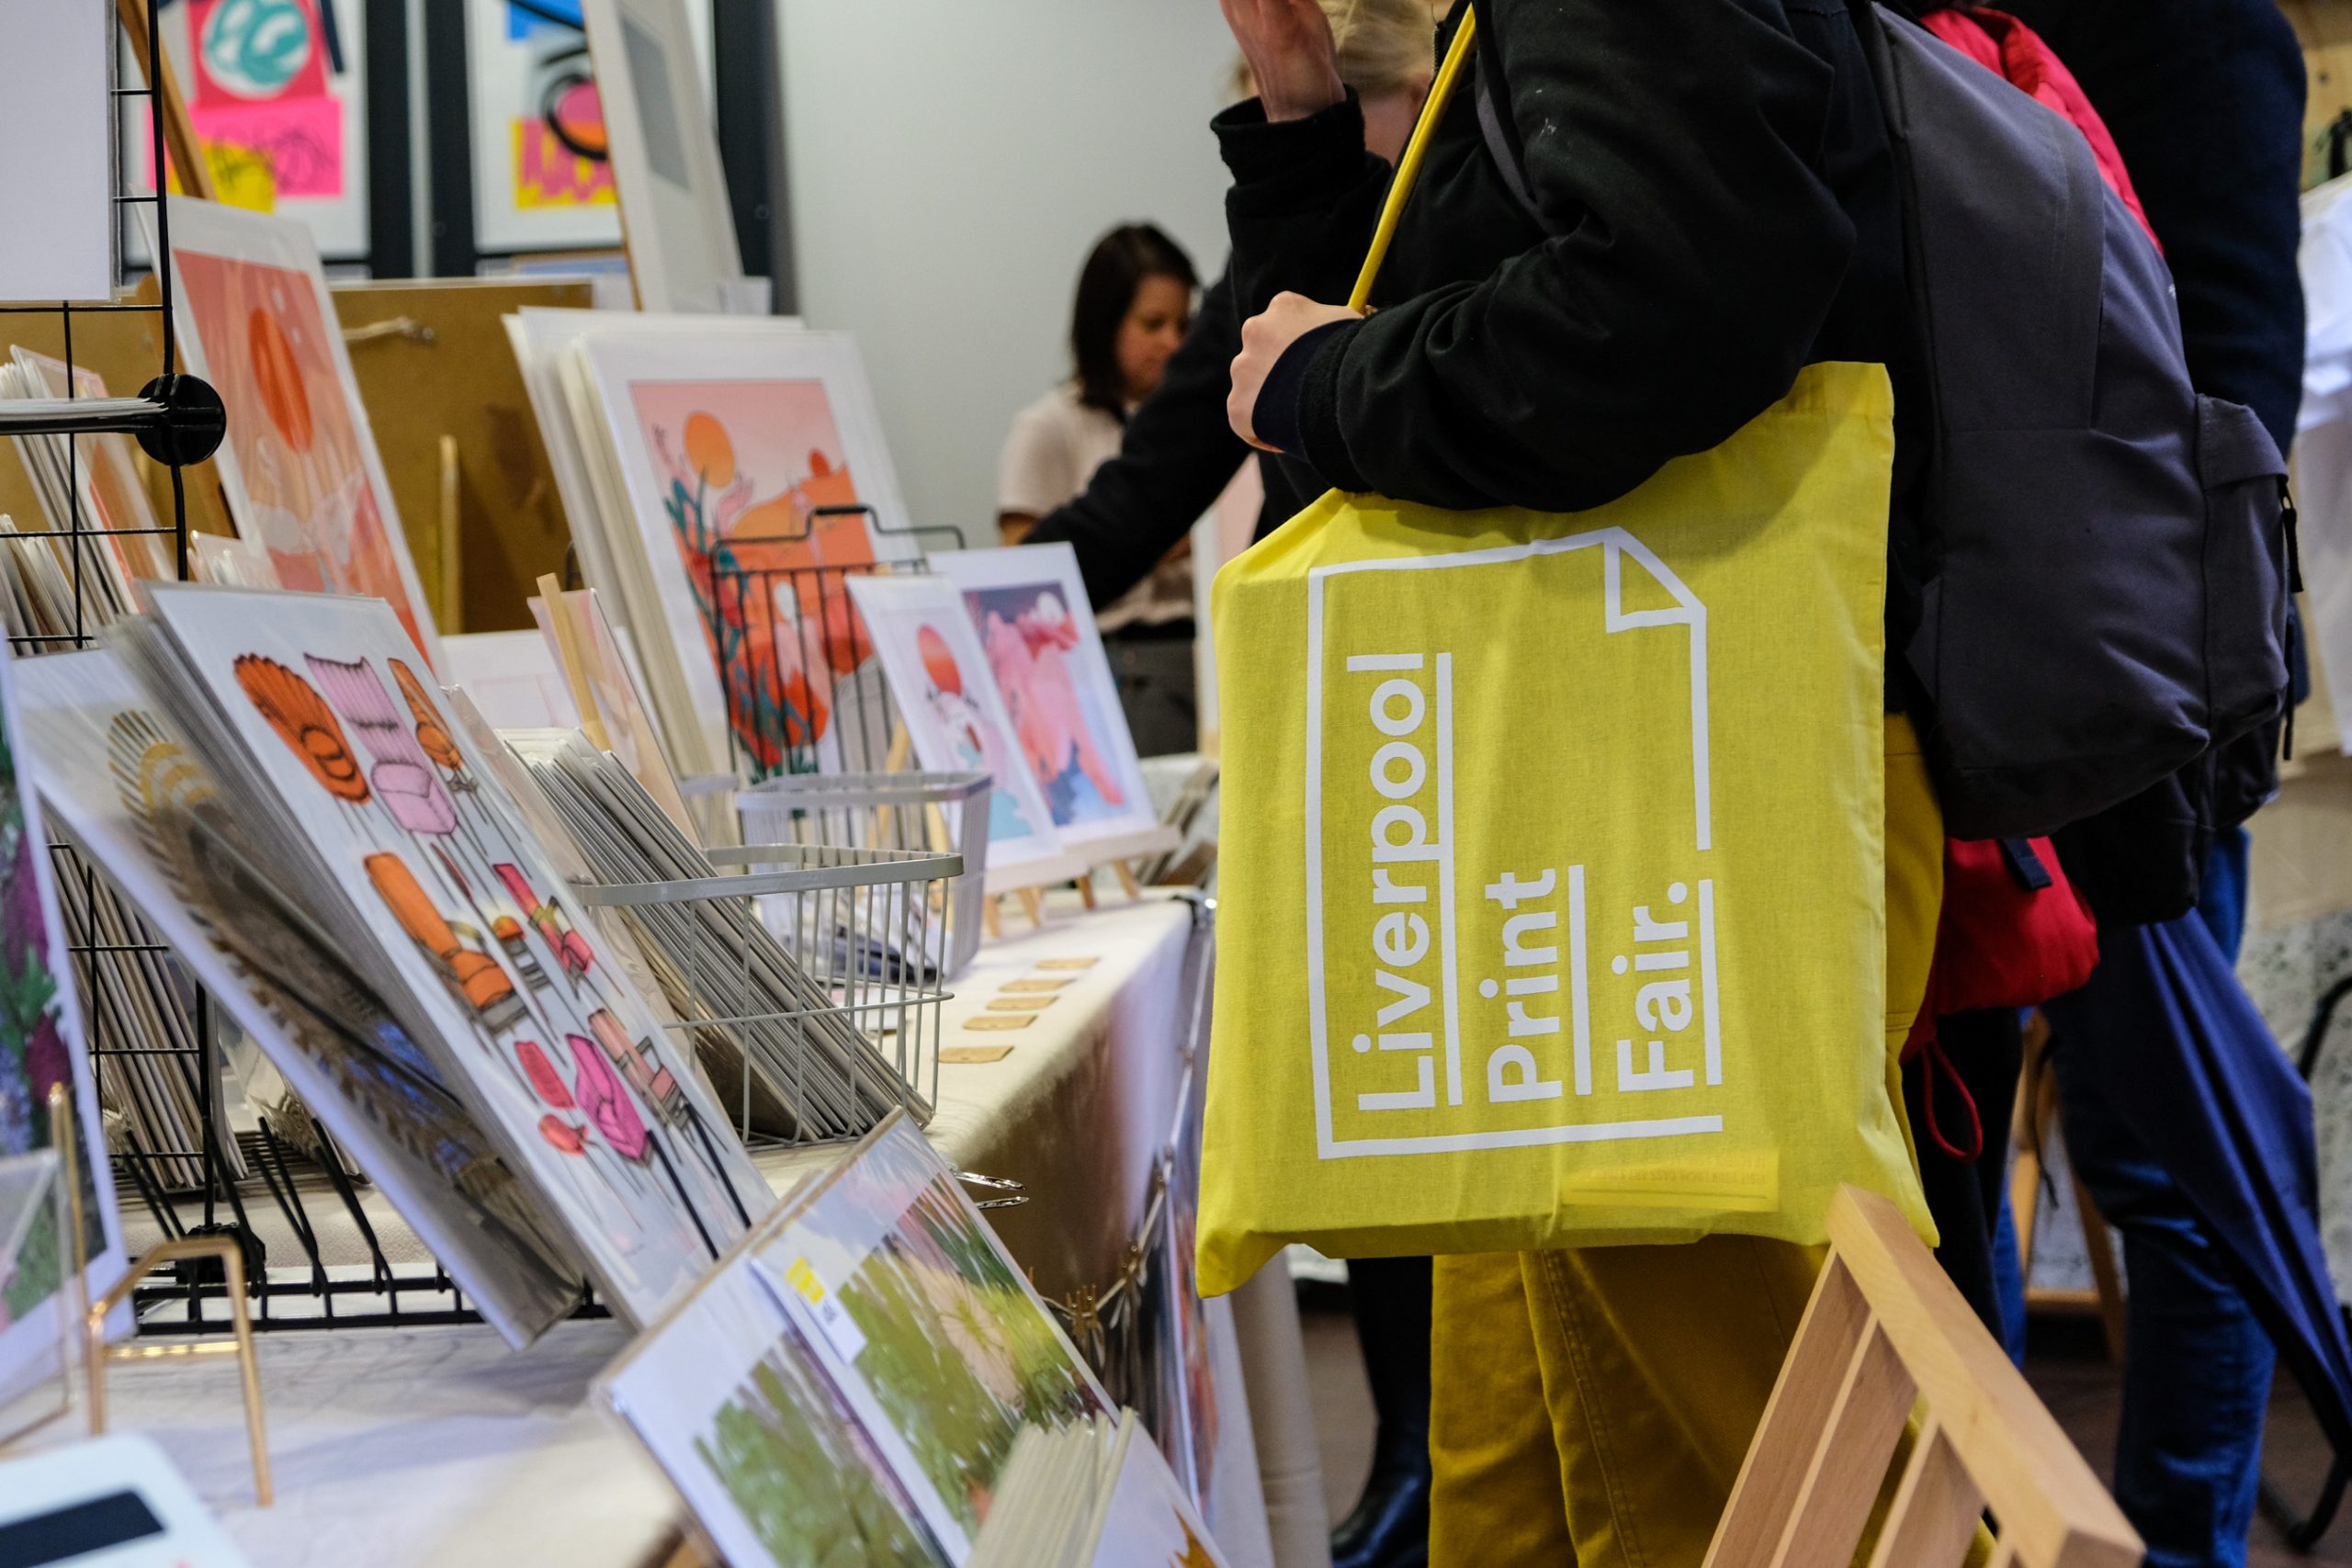 Aimee Mac Illsutration at Liverpool Print Fair in April 2019